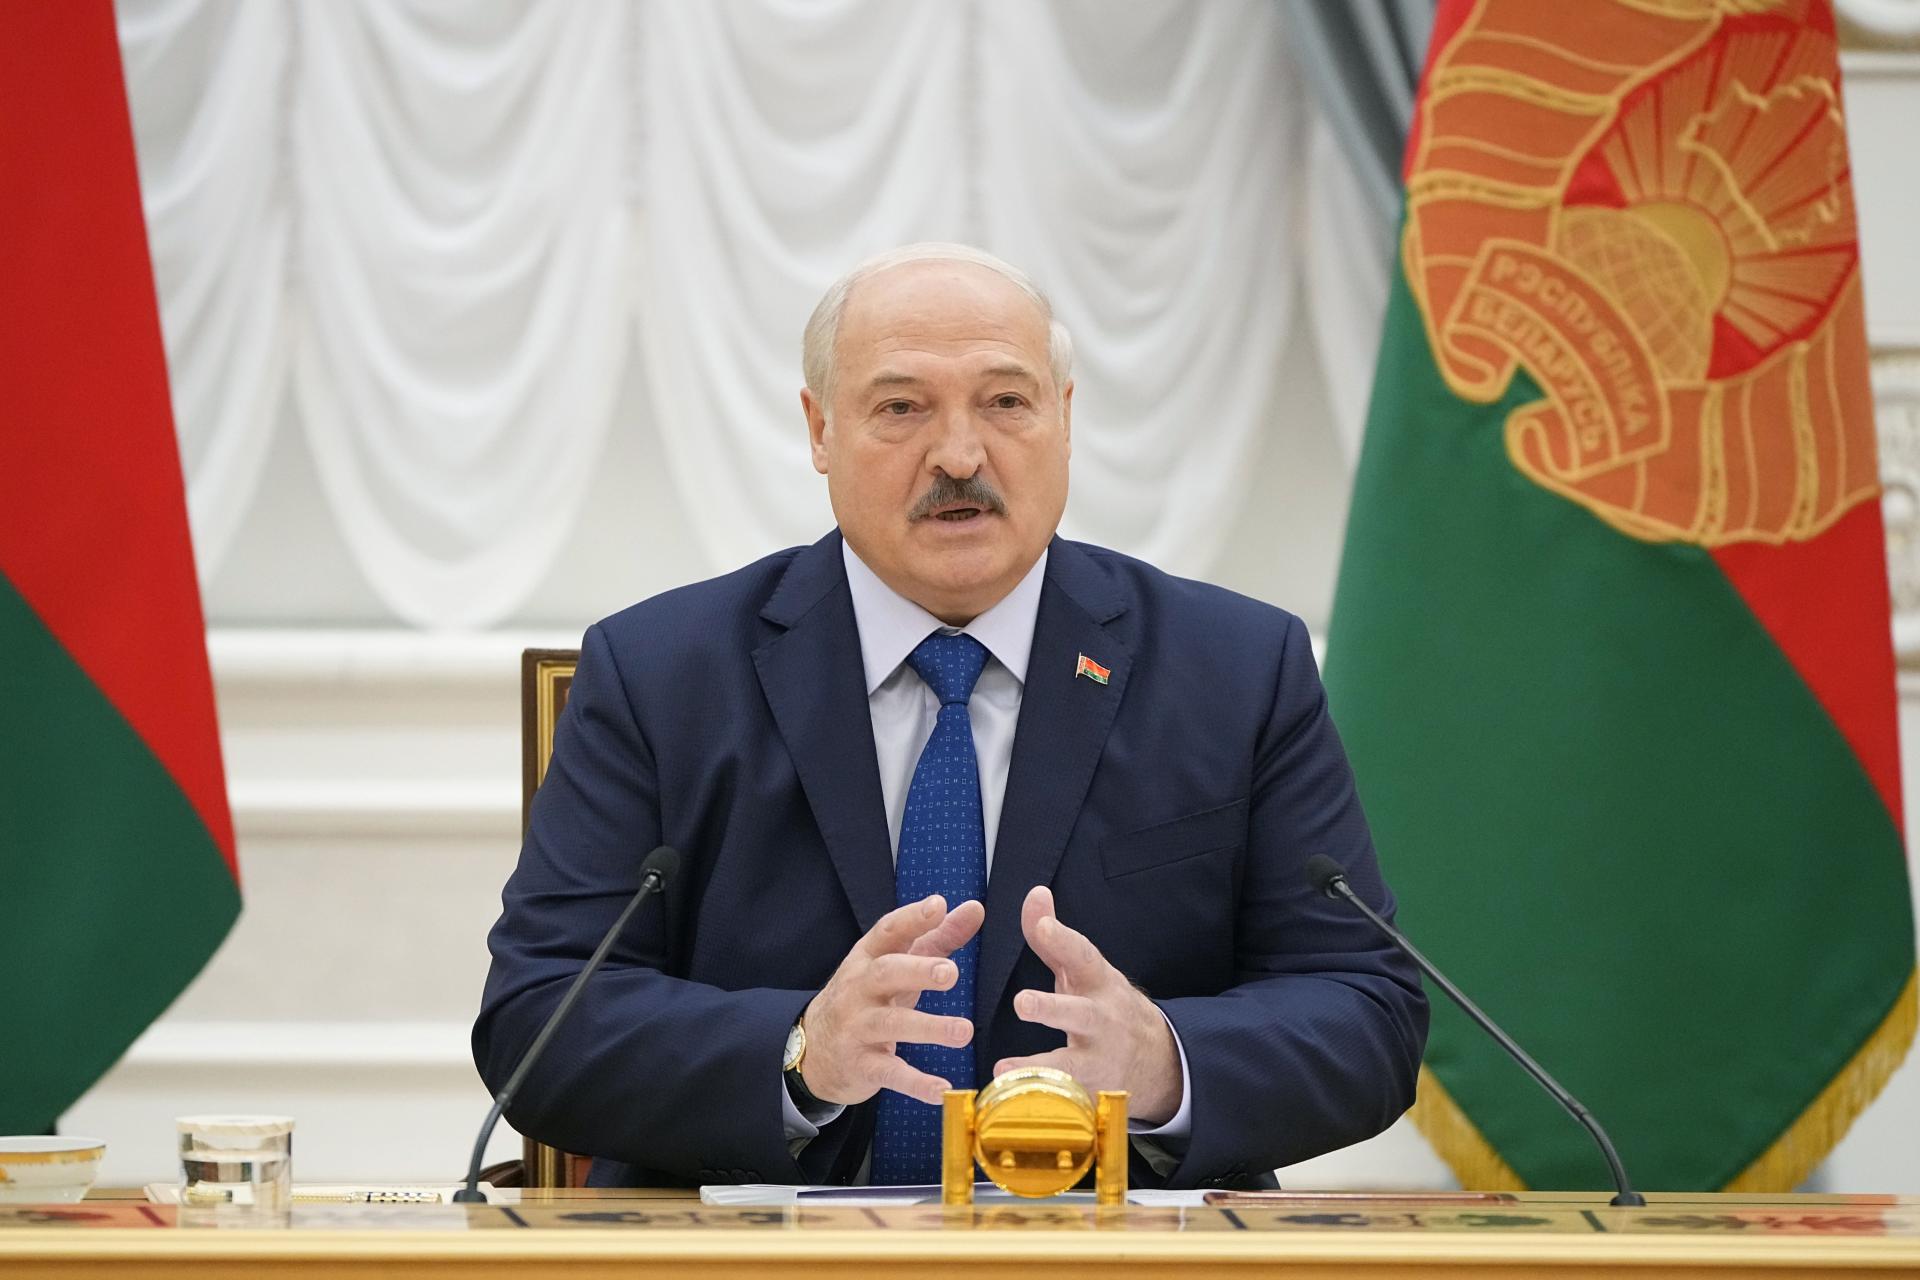 Prezident Lukašenko udelil sebe aj rodine doživotnú imunitu pred stíhaním, obmedzil aj kandidatúru z opozície